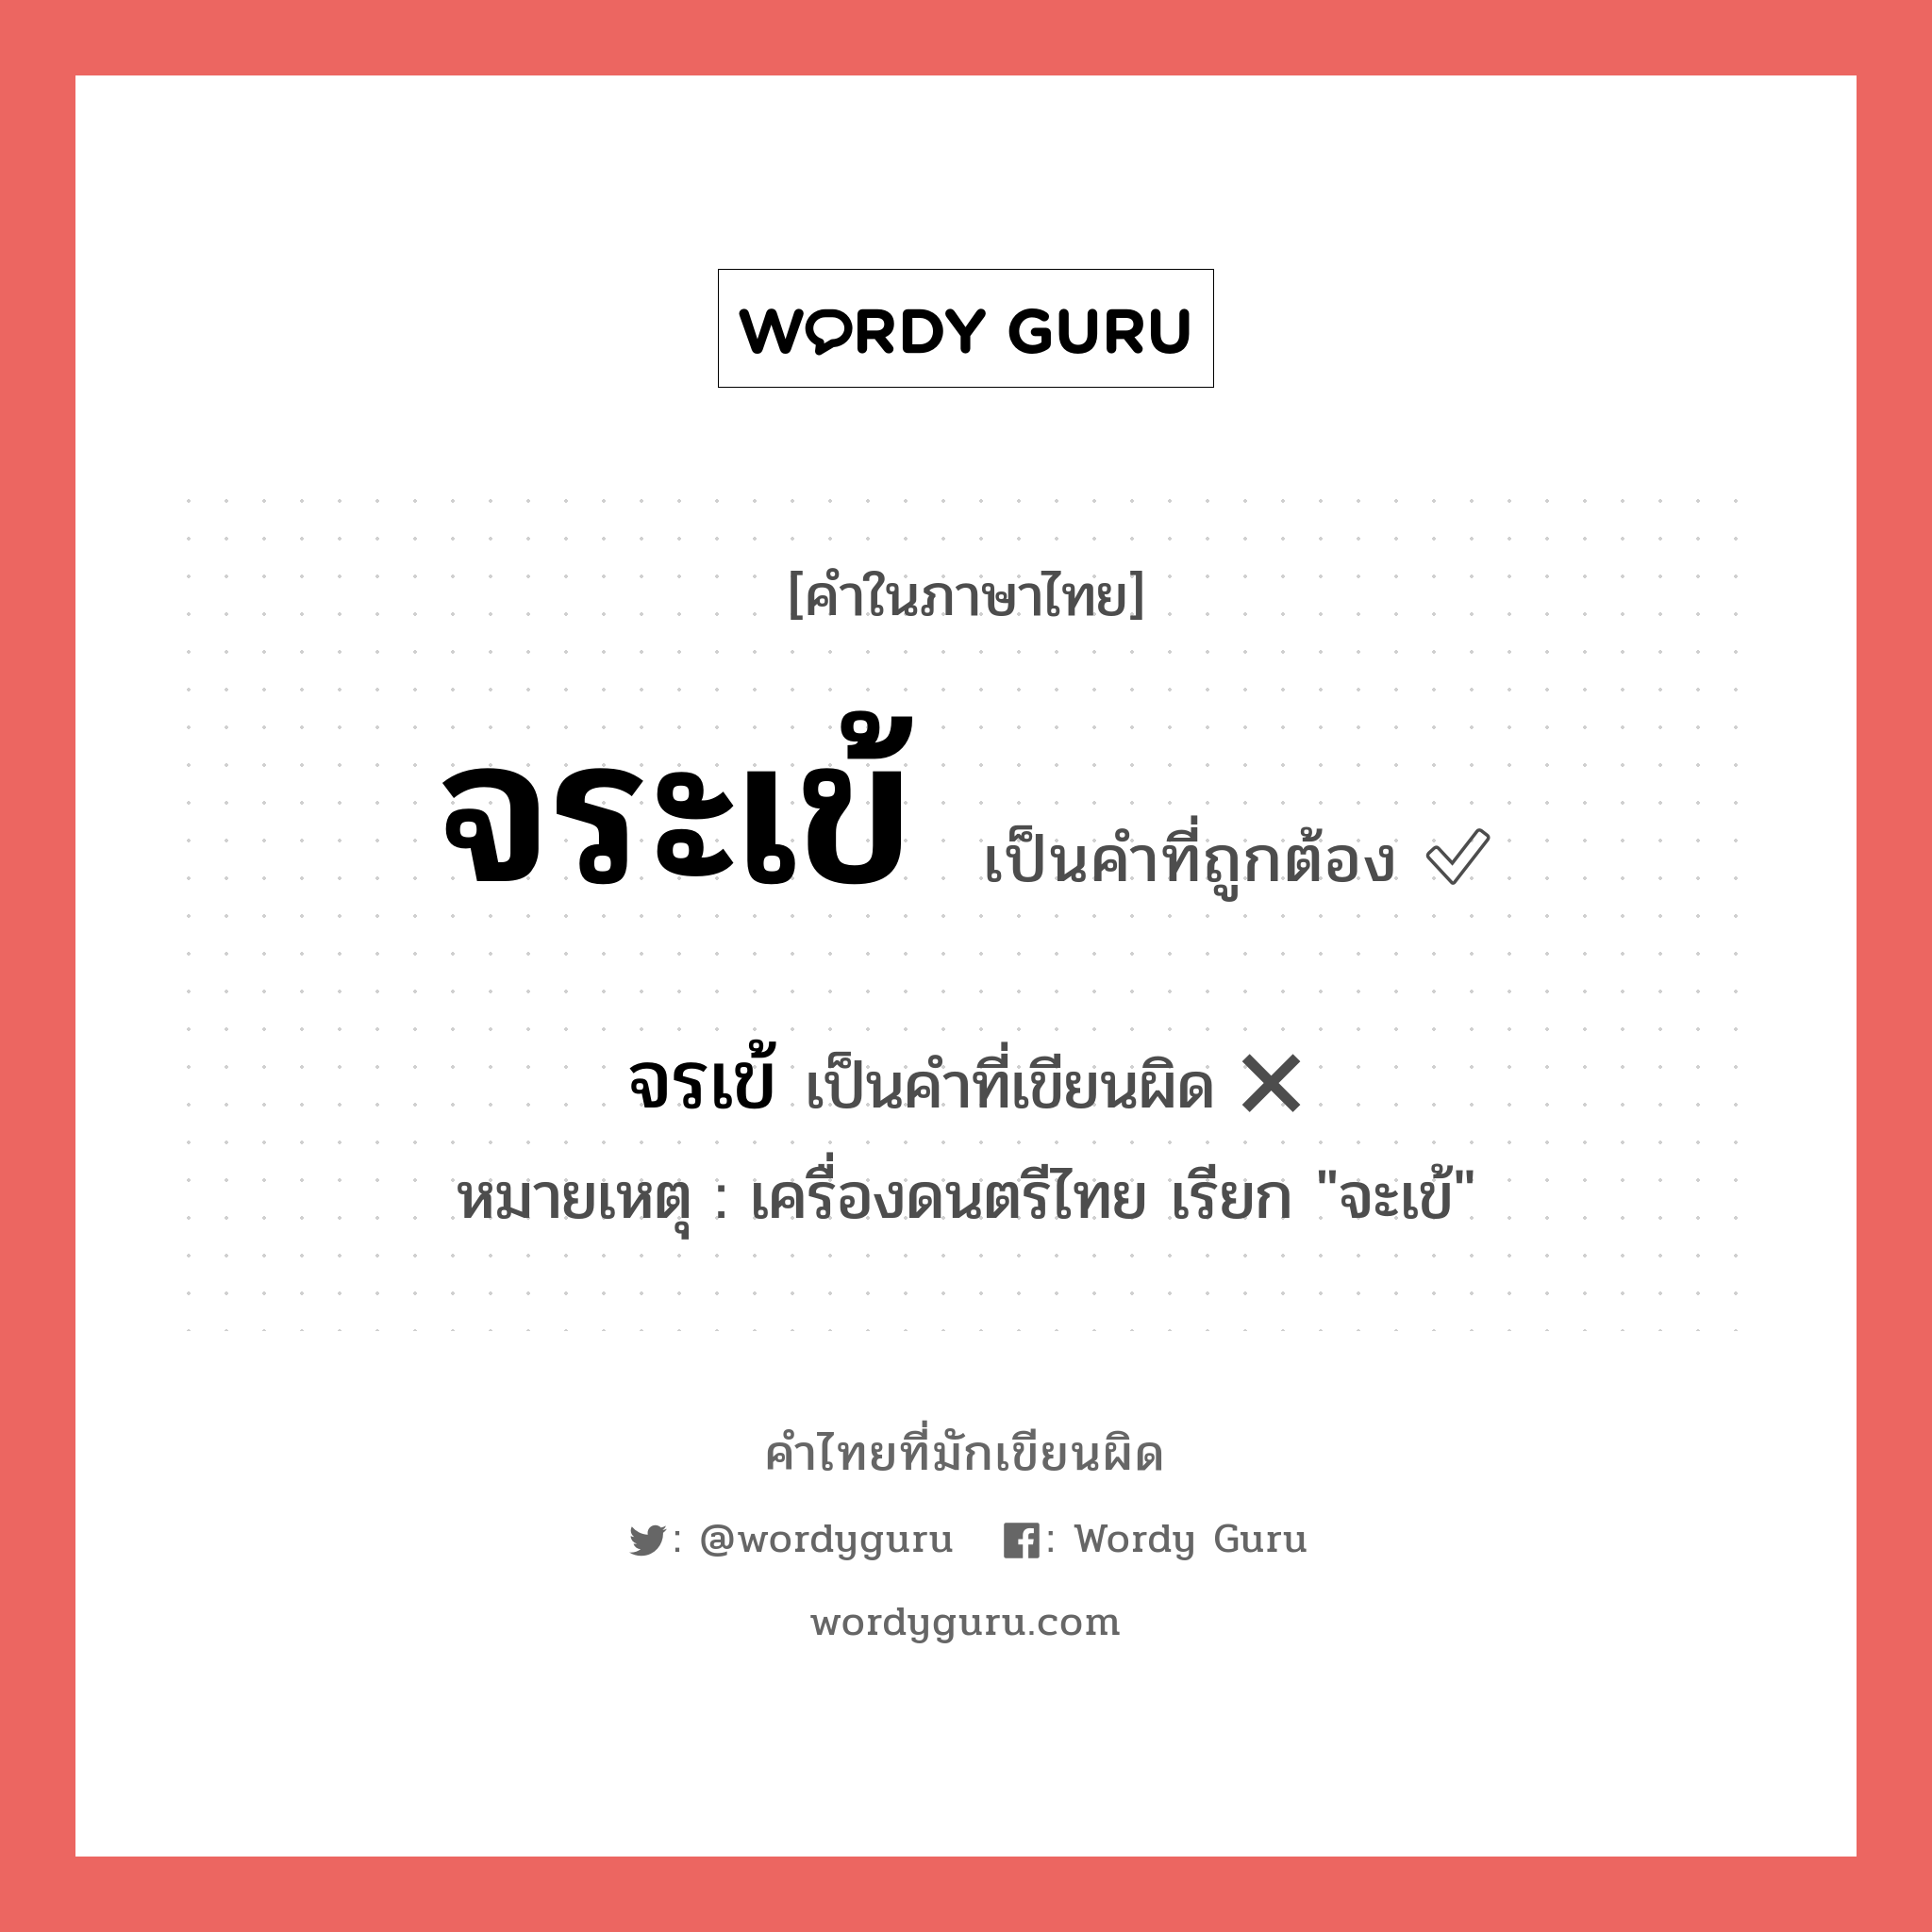 จระเข้ หรือ จรเข้ เขียนยังไง? คำไหนเขียนถูก?, คำในภาษาไทยที่มักเขียนผิด จระเข้ คำที่ผิด ❌ จรเข้ หมายเหตุ เครื่องดนตรีไทย เรียก "จะเข้"